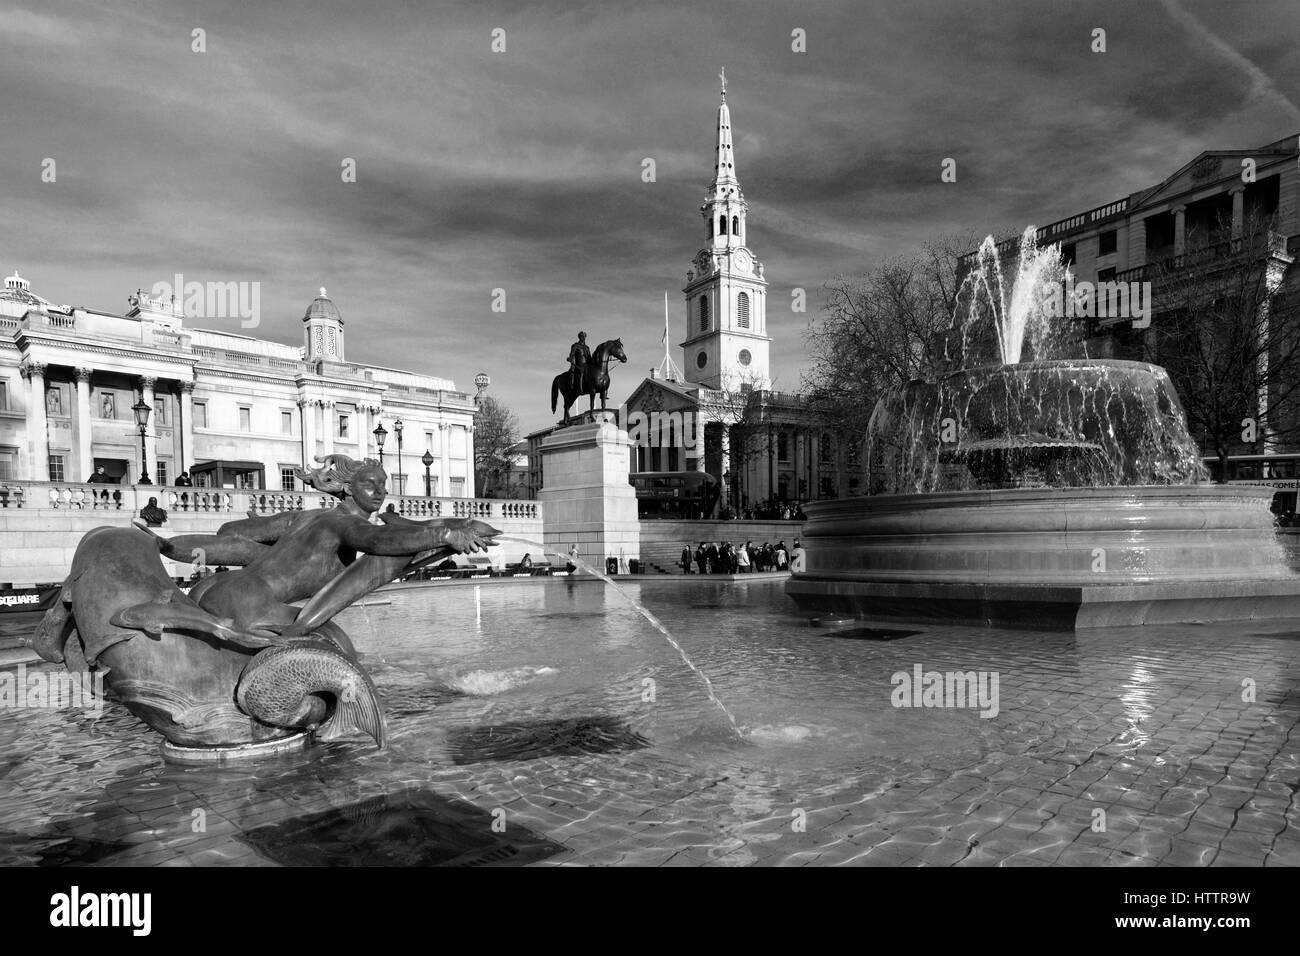 Les fontaines d'eau avec les touristes, Trafalgar square, City of westminster, London, England, UK Banque D'Images